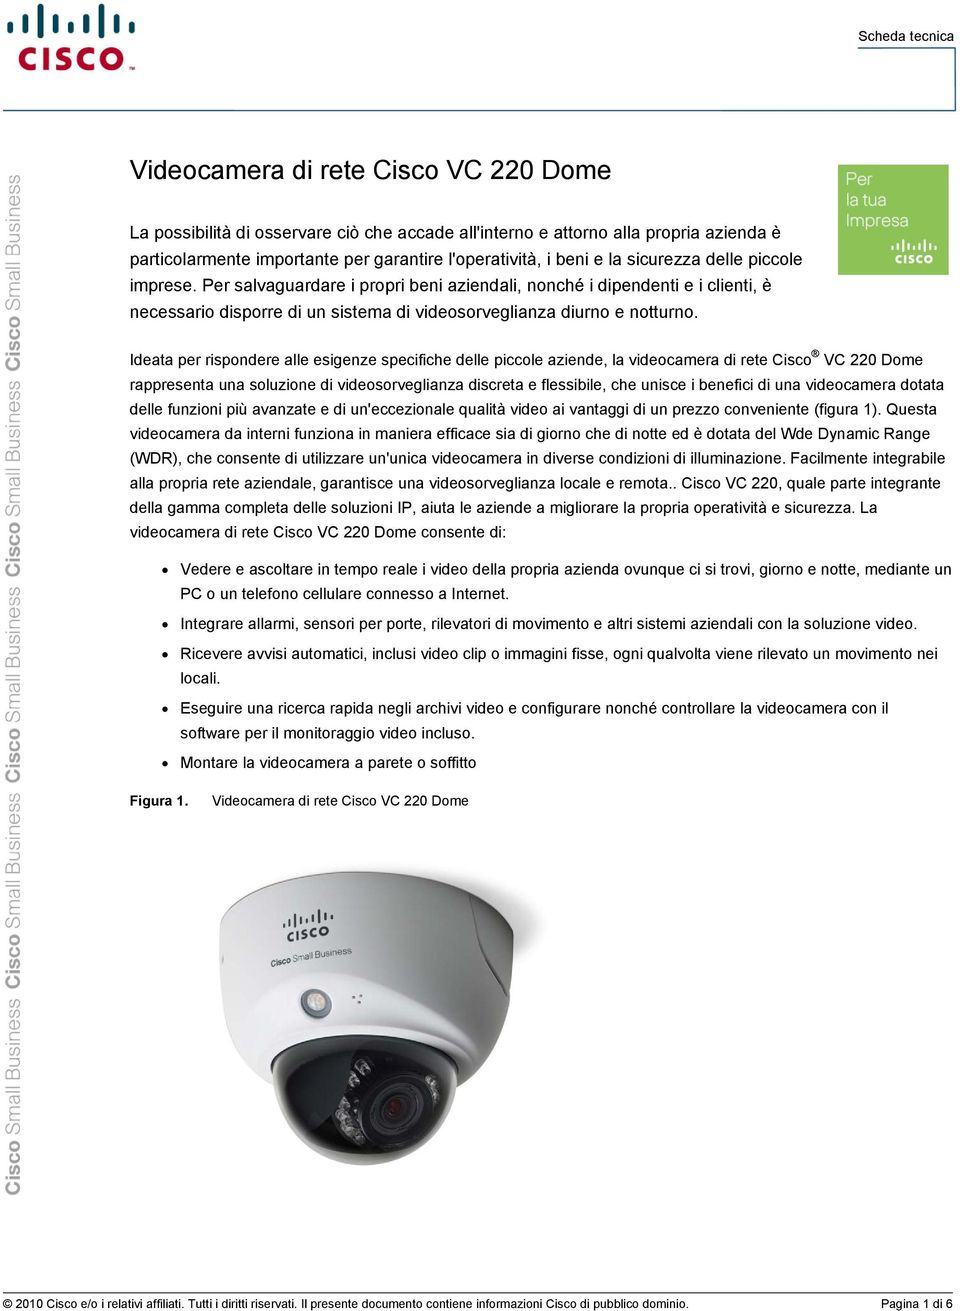 Ideata per rispondere alle esigenze specifiche delle piccole aziende, la videocamera di rete Cisco VC 220 Dome rappresenta una soluzione di videosorveglianza discreta e flessibile, che unisce i